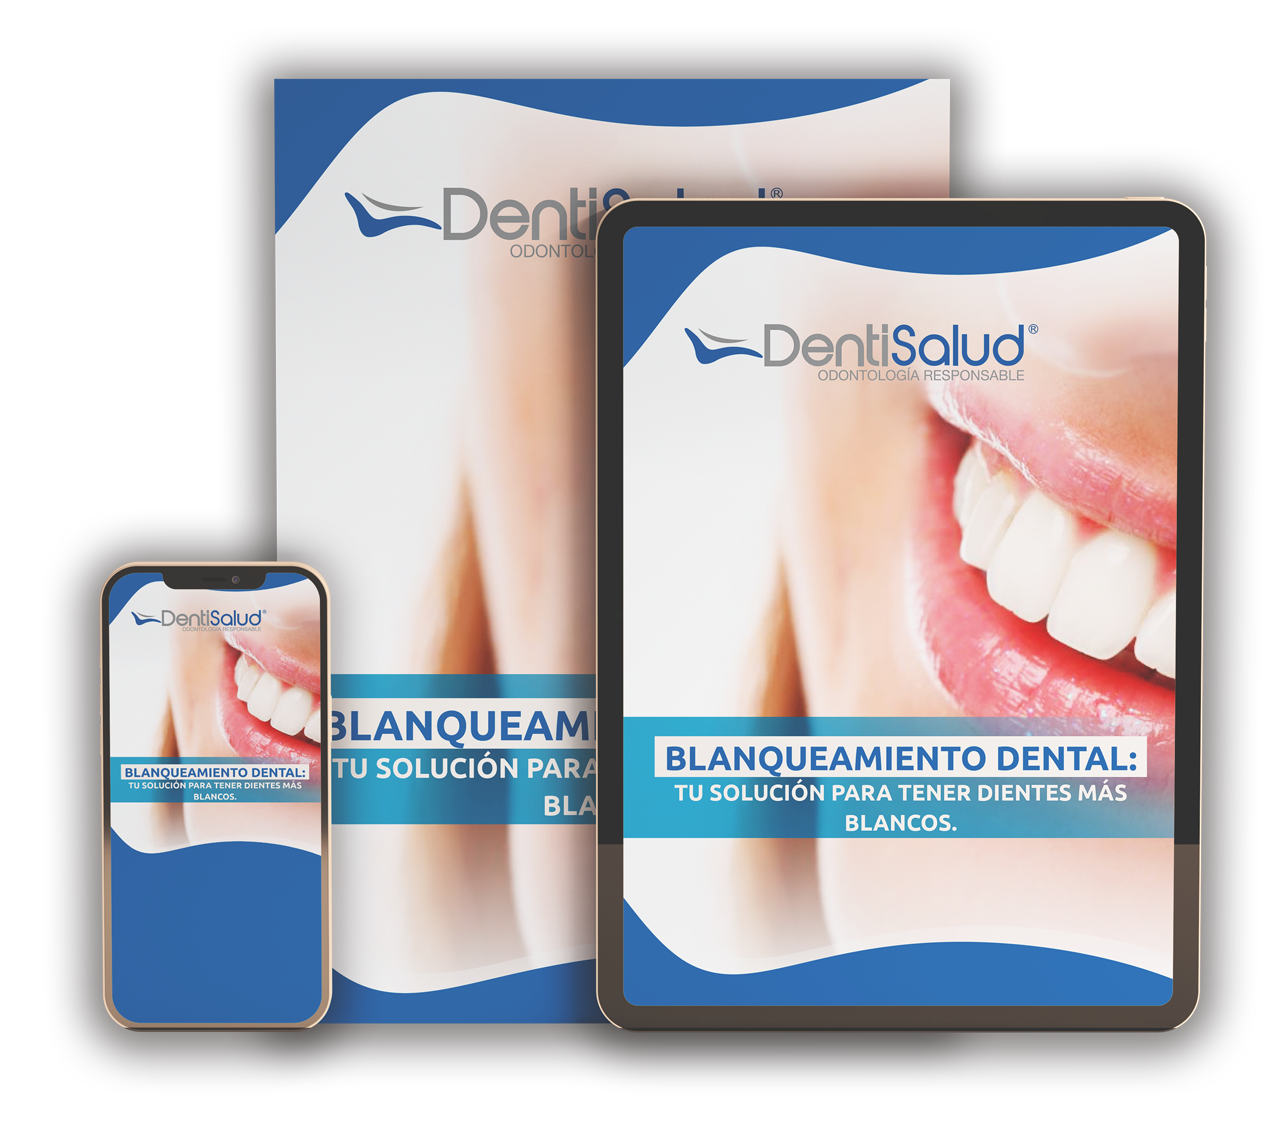 Descarga GRATIS el Ebook Blanqueamiento Dental: Tu solución para tener dientes más blancos - DentiSalud